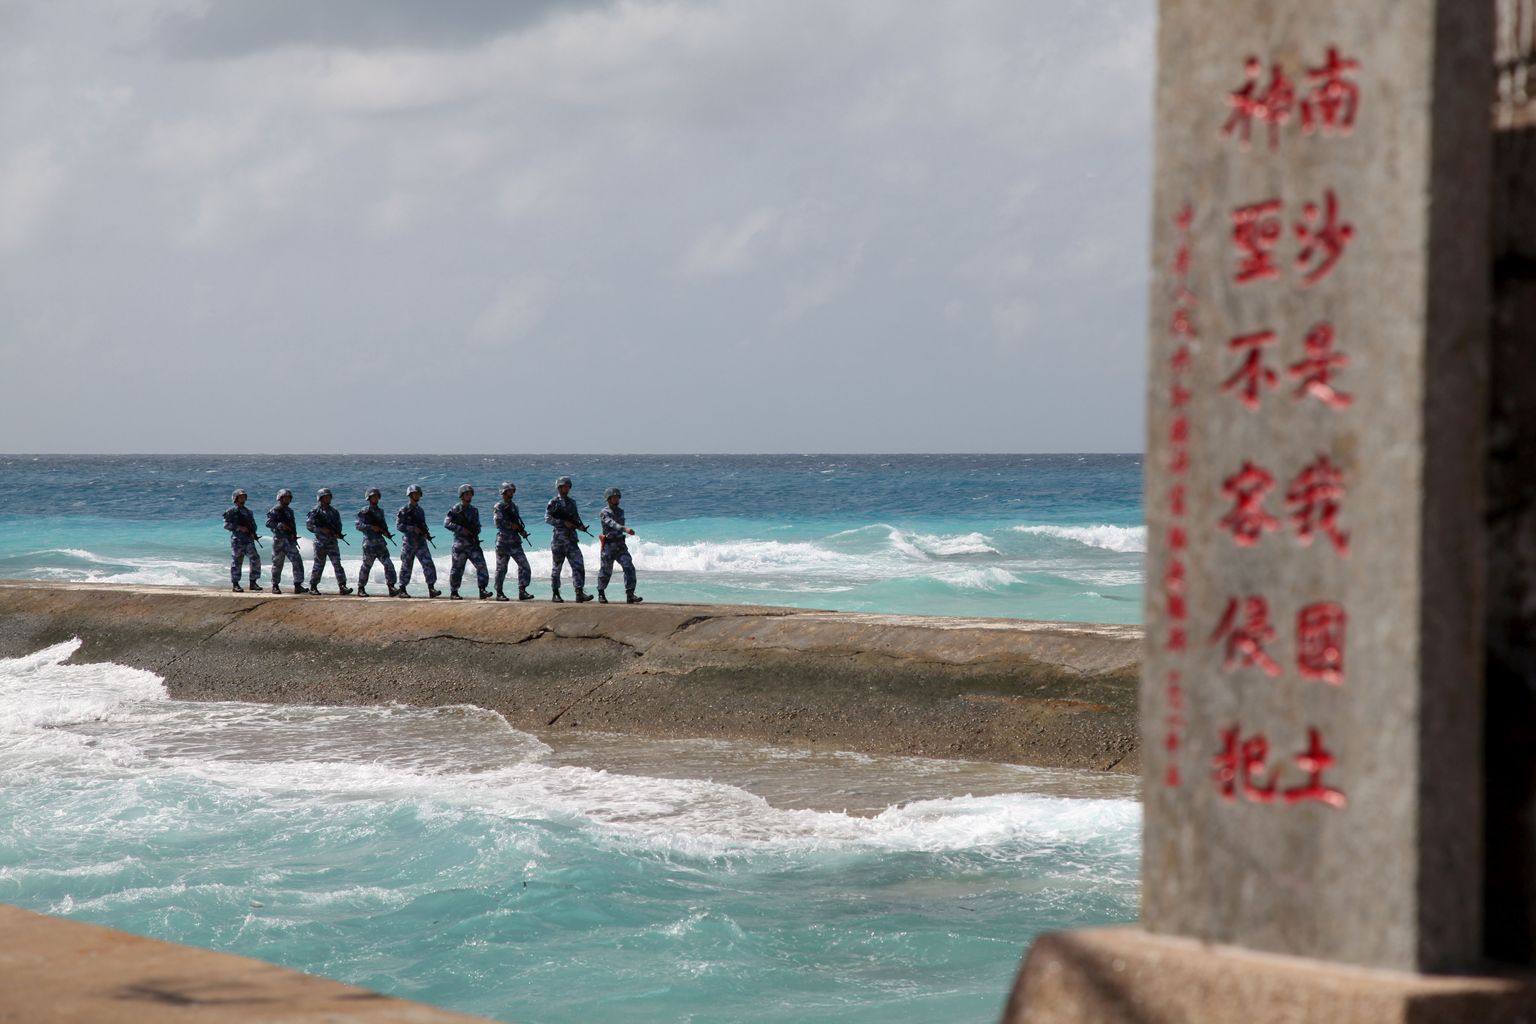 Hiina Rahvavabastusarmee patrull Spratly saartel.